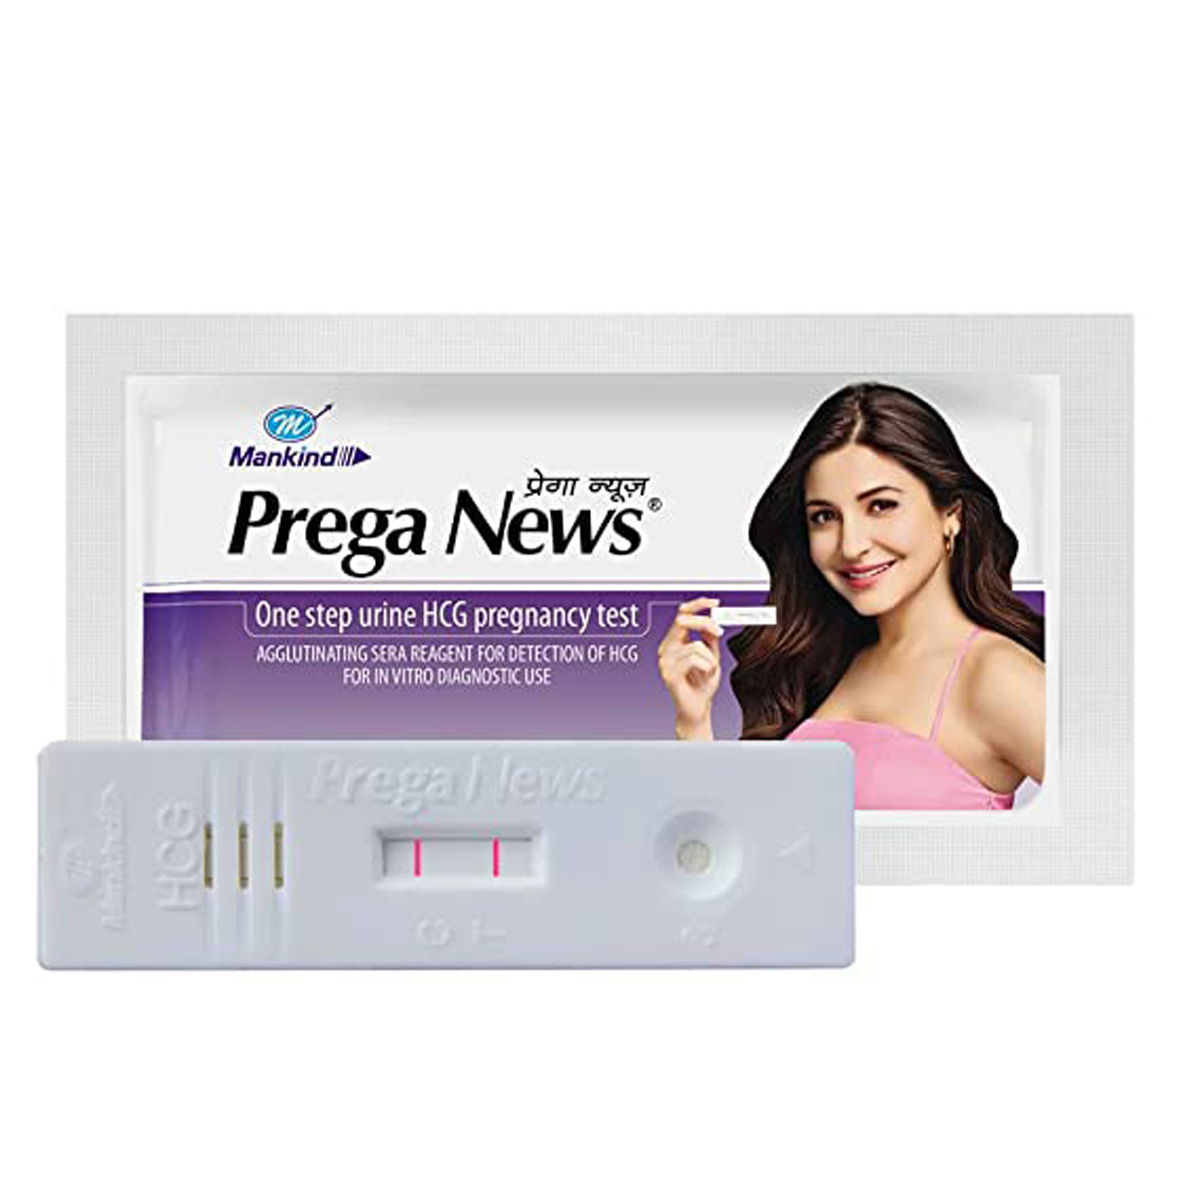 Buy Prega News Pregnancy Test Kit, 1 Count Online